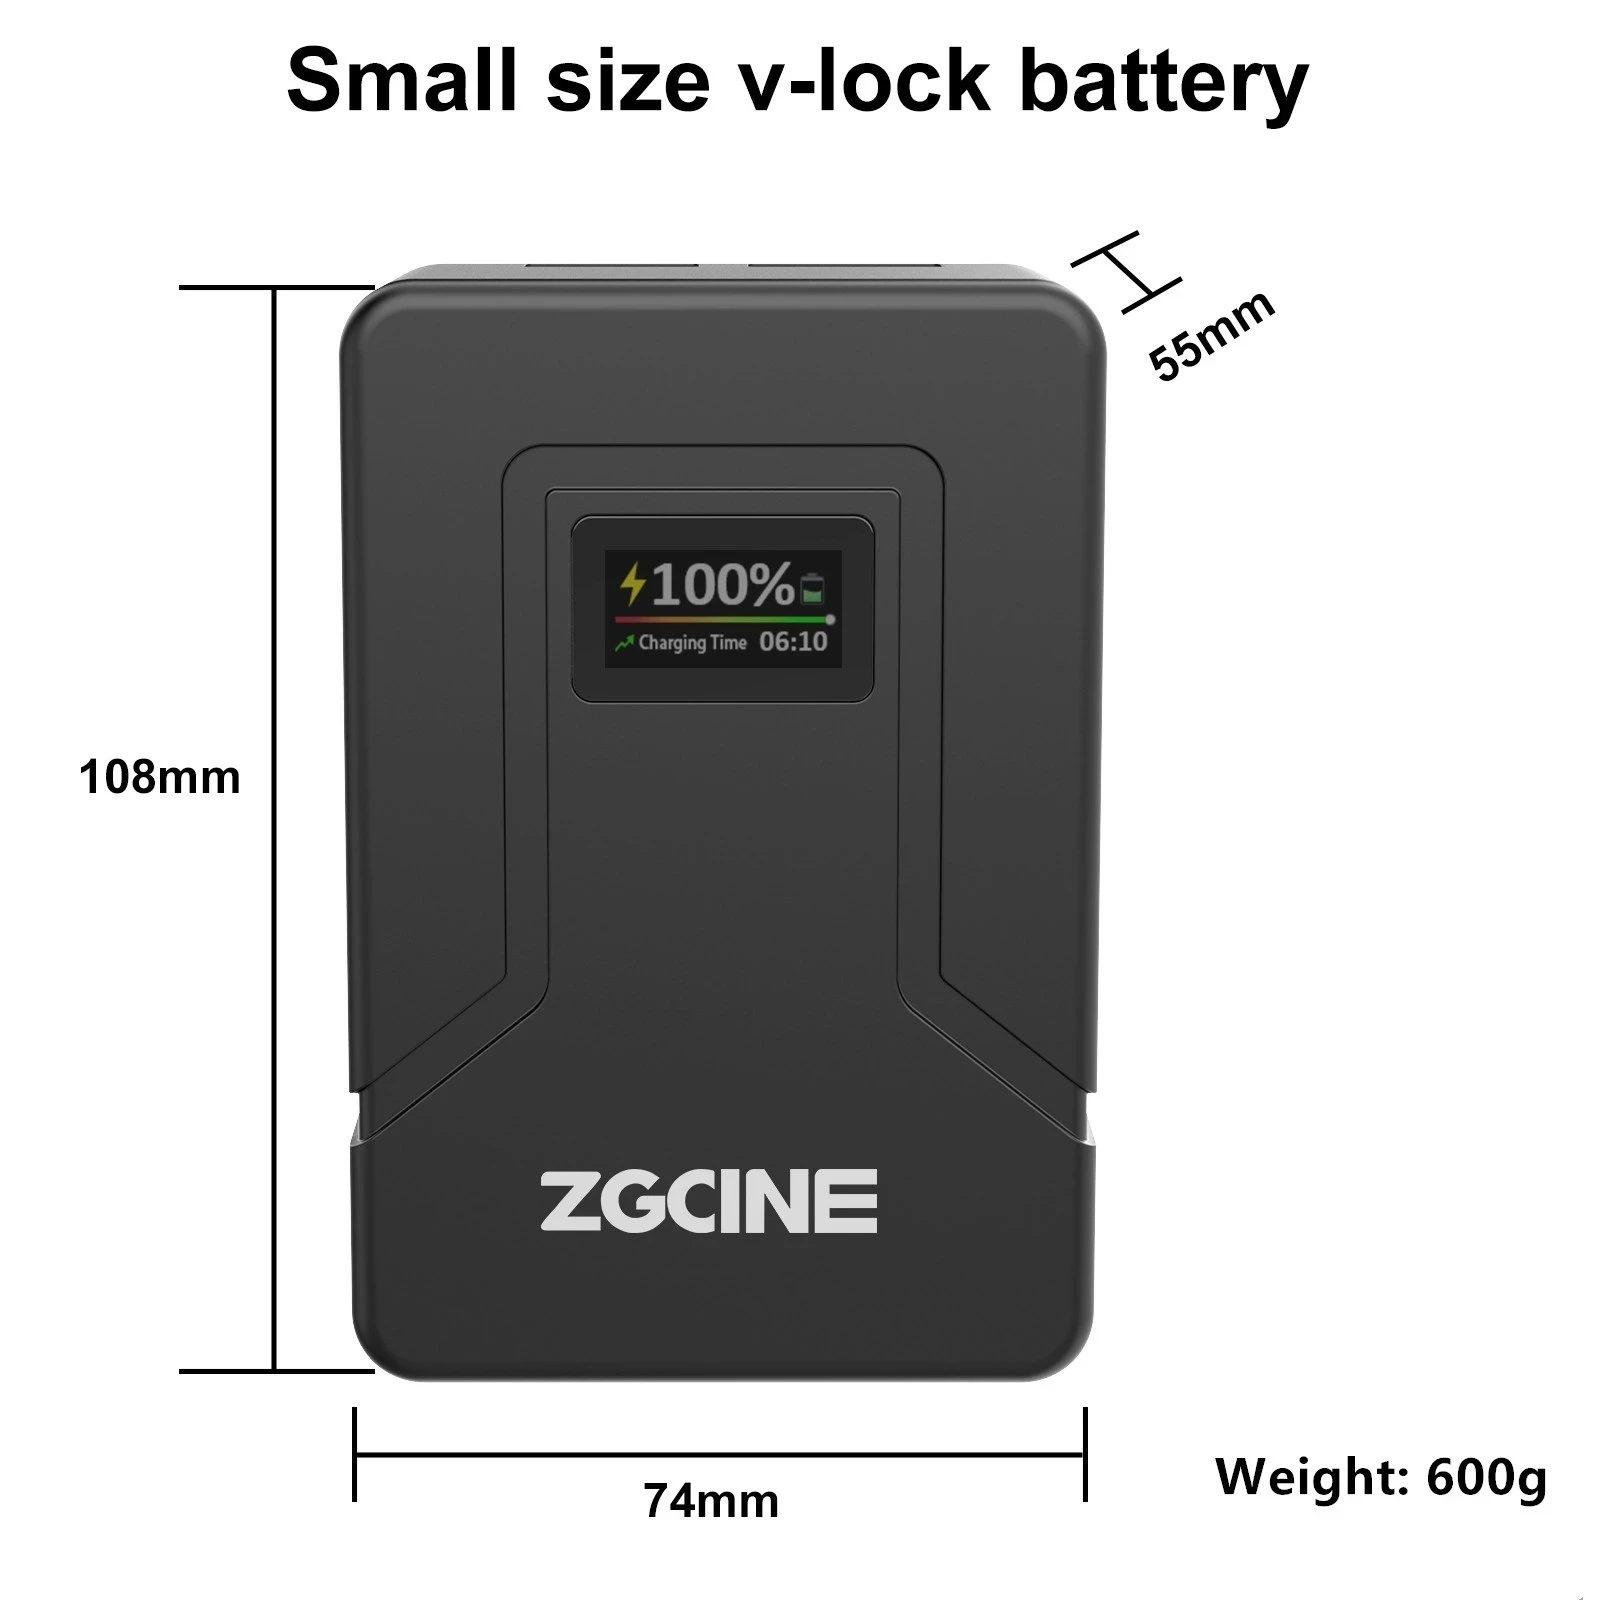 zgcine zg-v99 v mount battery v| Alibaba.com